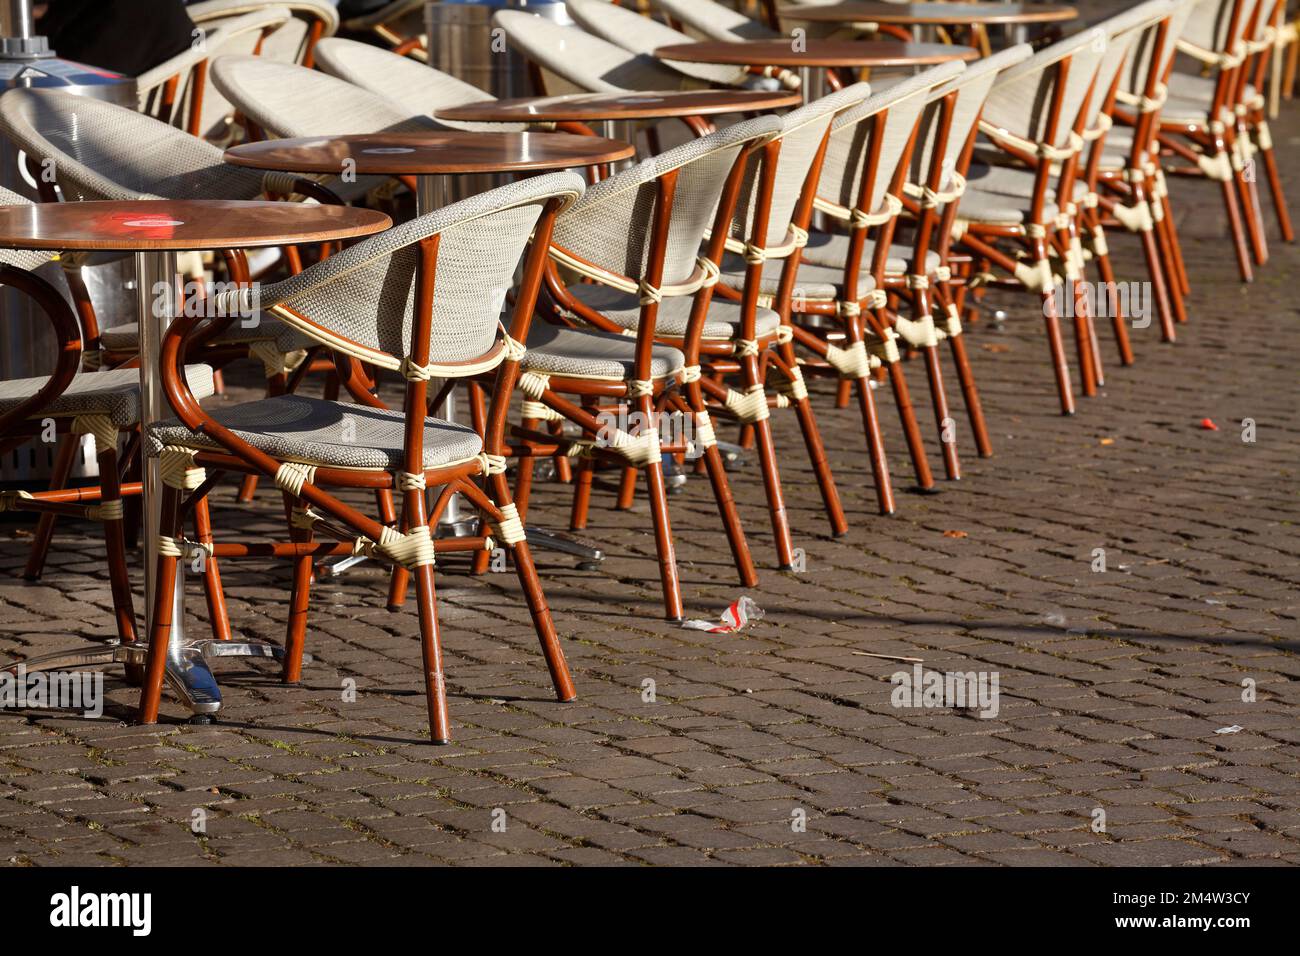 Stühle und Tische eines Cafes, Stuhlreihe, Gastronomie, Deutschland Stock Photo